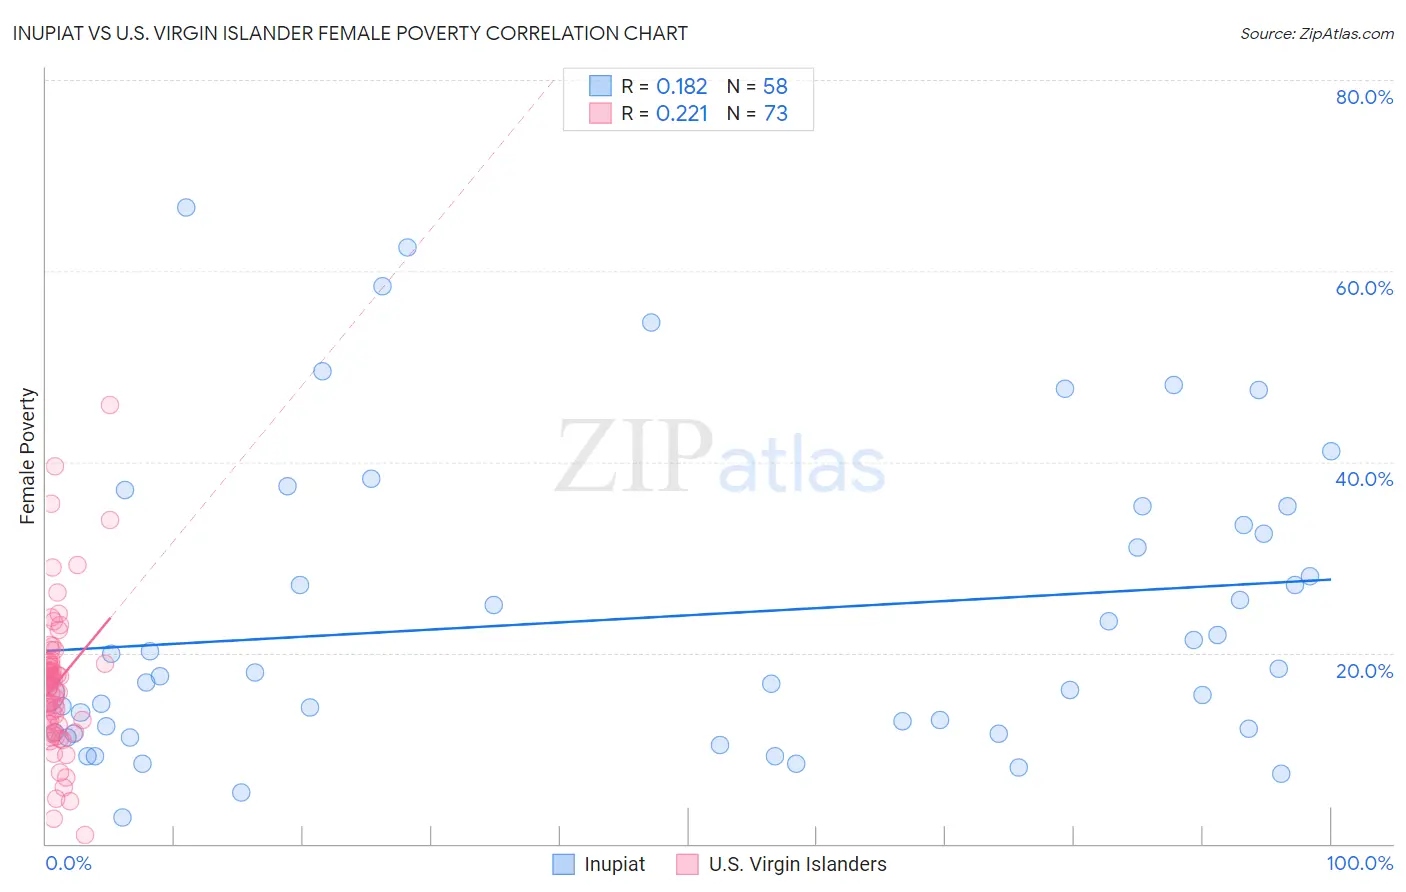 Inupiat vs U.S. Virgin Islander Female Poverty